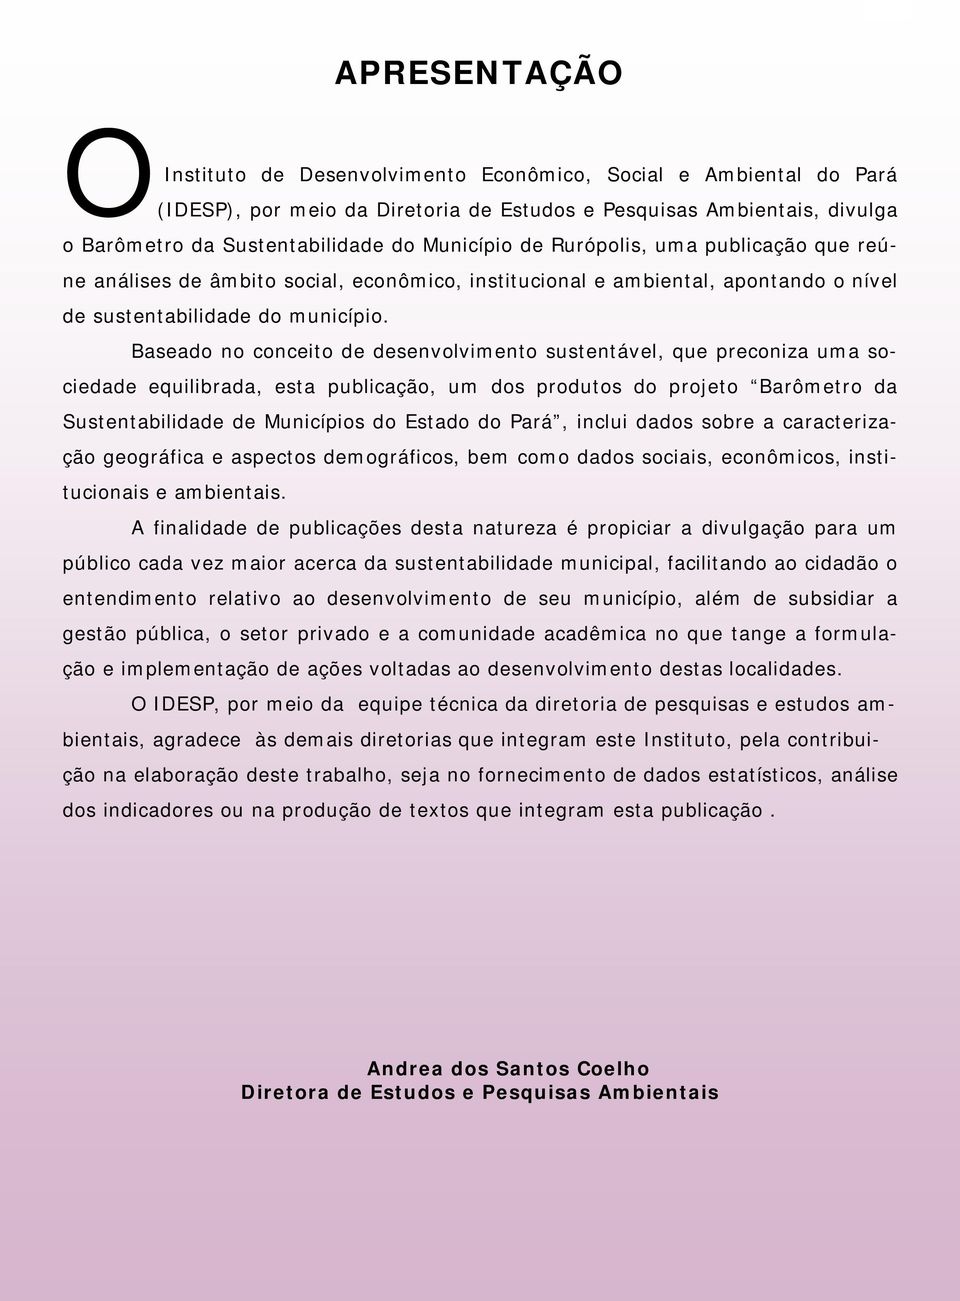 Baseado no conceito de desenvolvimento sustentável, que preconiza uma sociedade equilibrada, esta publicação, um dos produtos do projeto Barômetro da Sustentabilidade de Municípios do Estado do Pará,